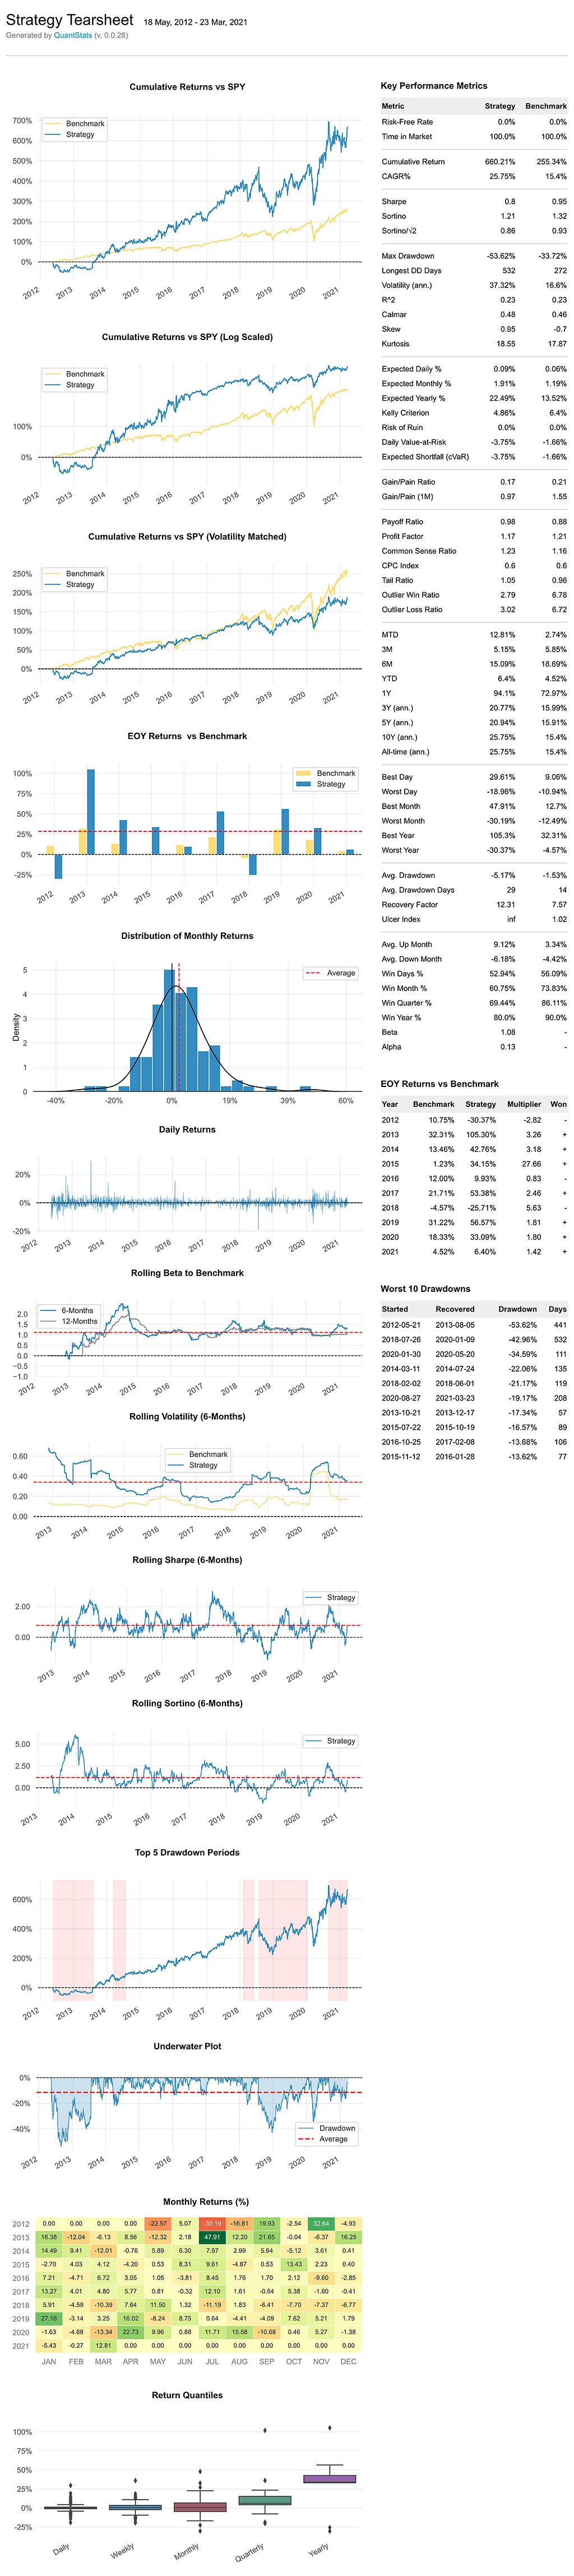 Example QuantStats Portfolio analytics